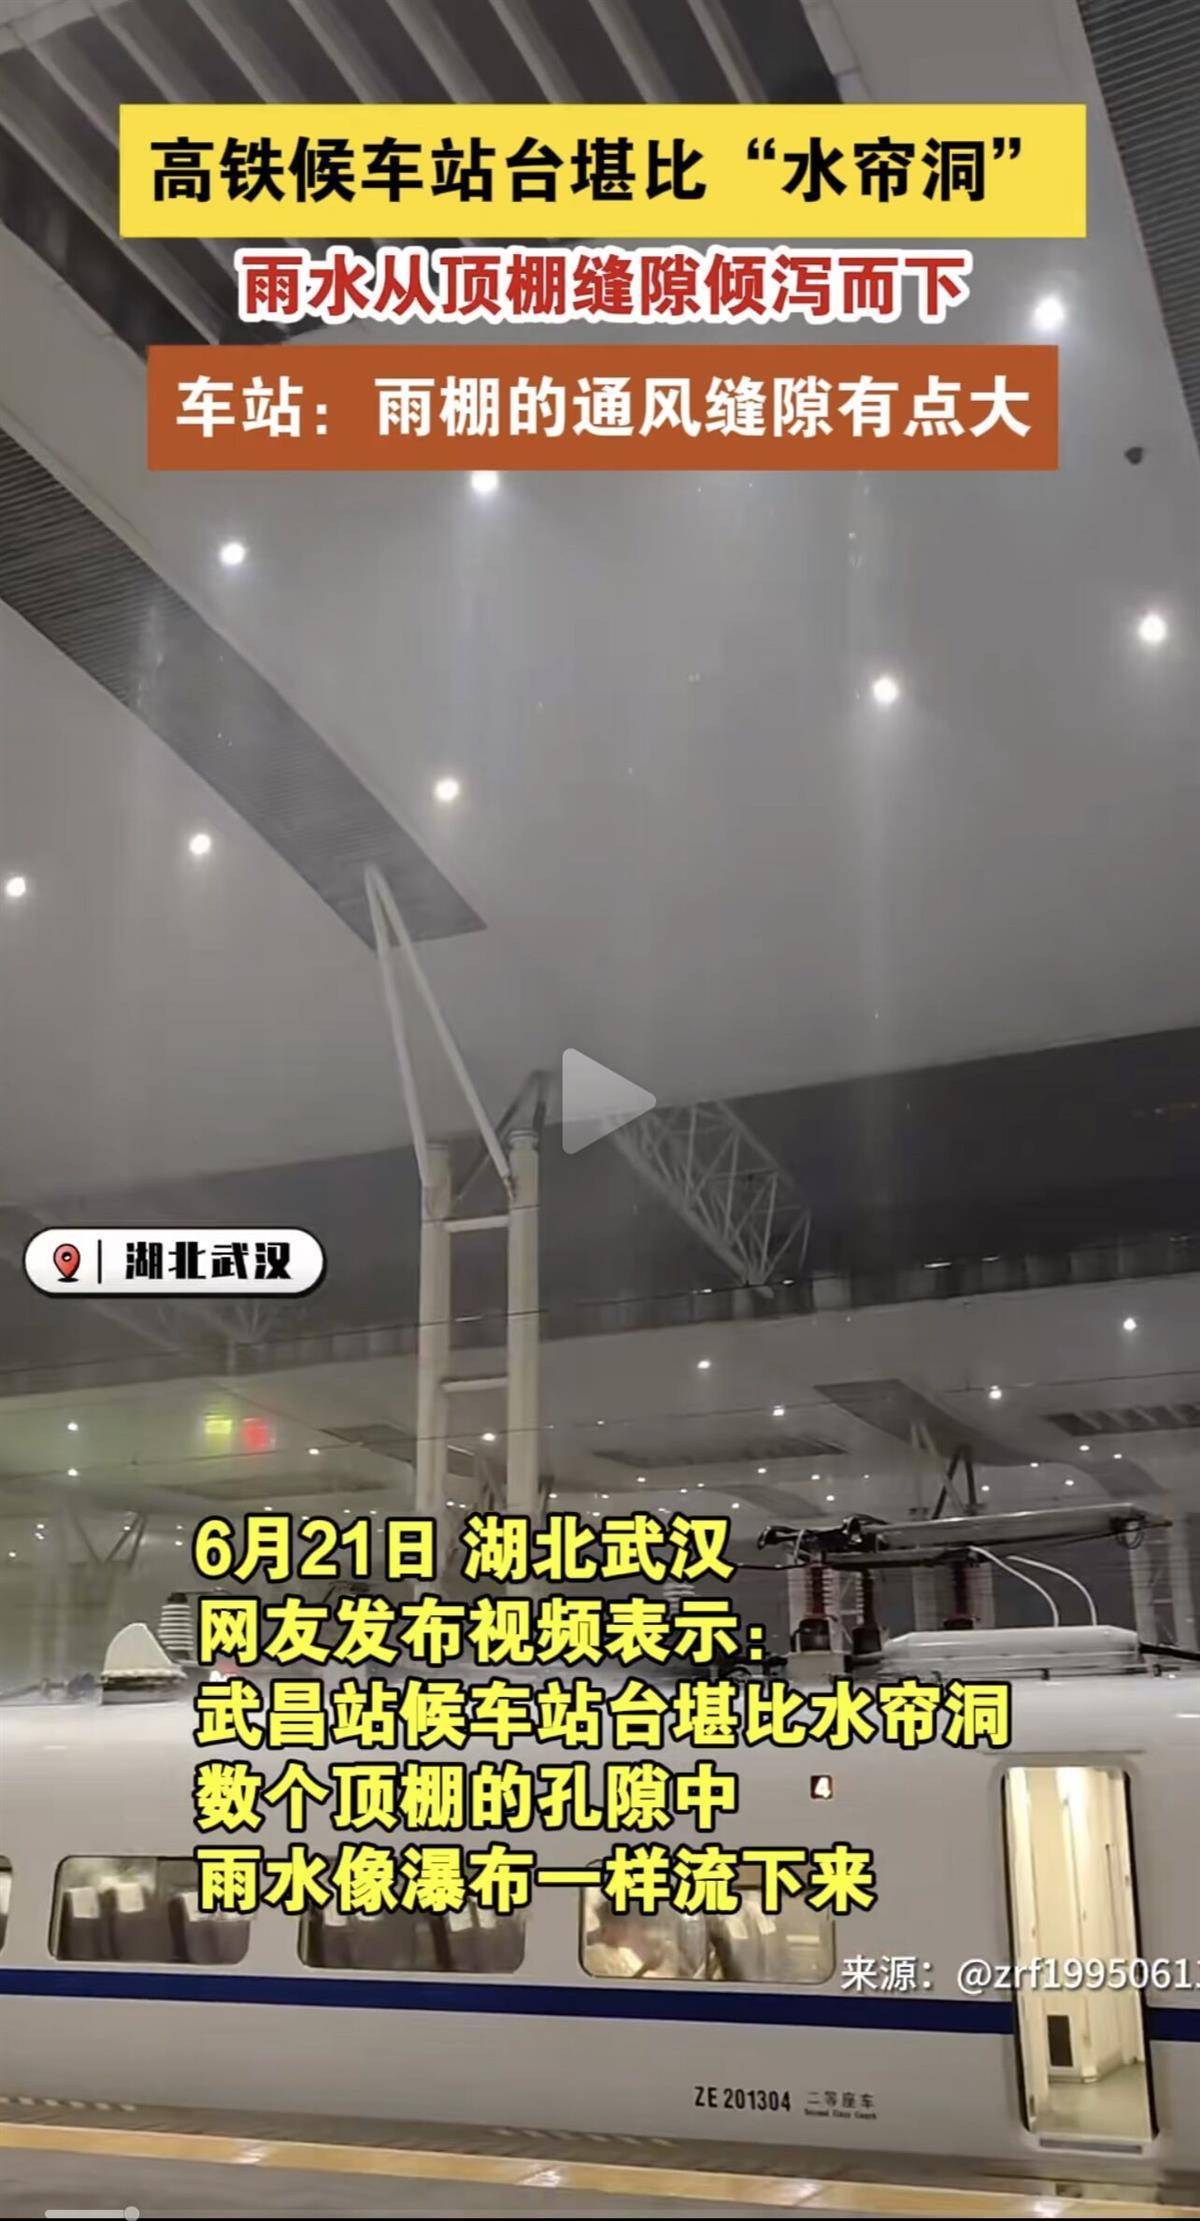 不影响乘车 水帘洞 武昌站 武汉有高铁候车站漏成 系设计预留的天窗